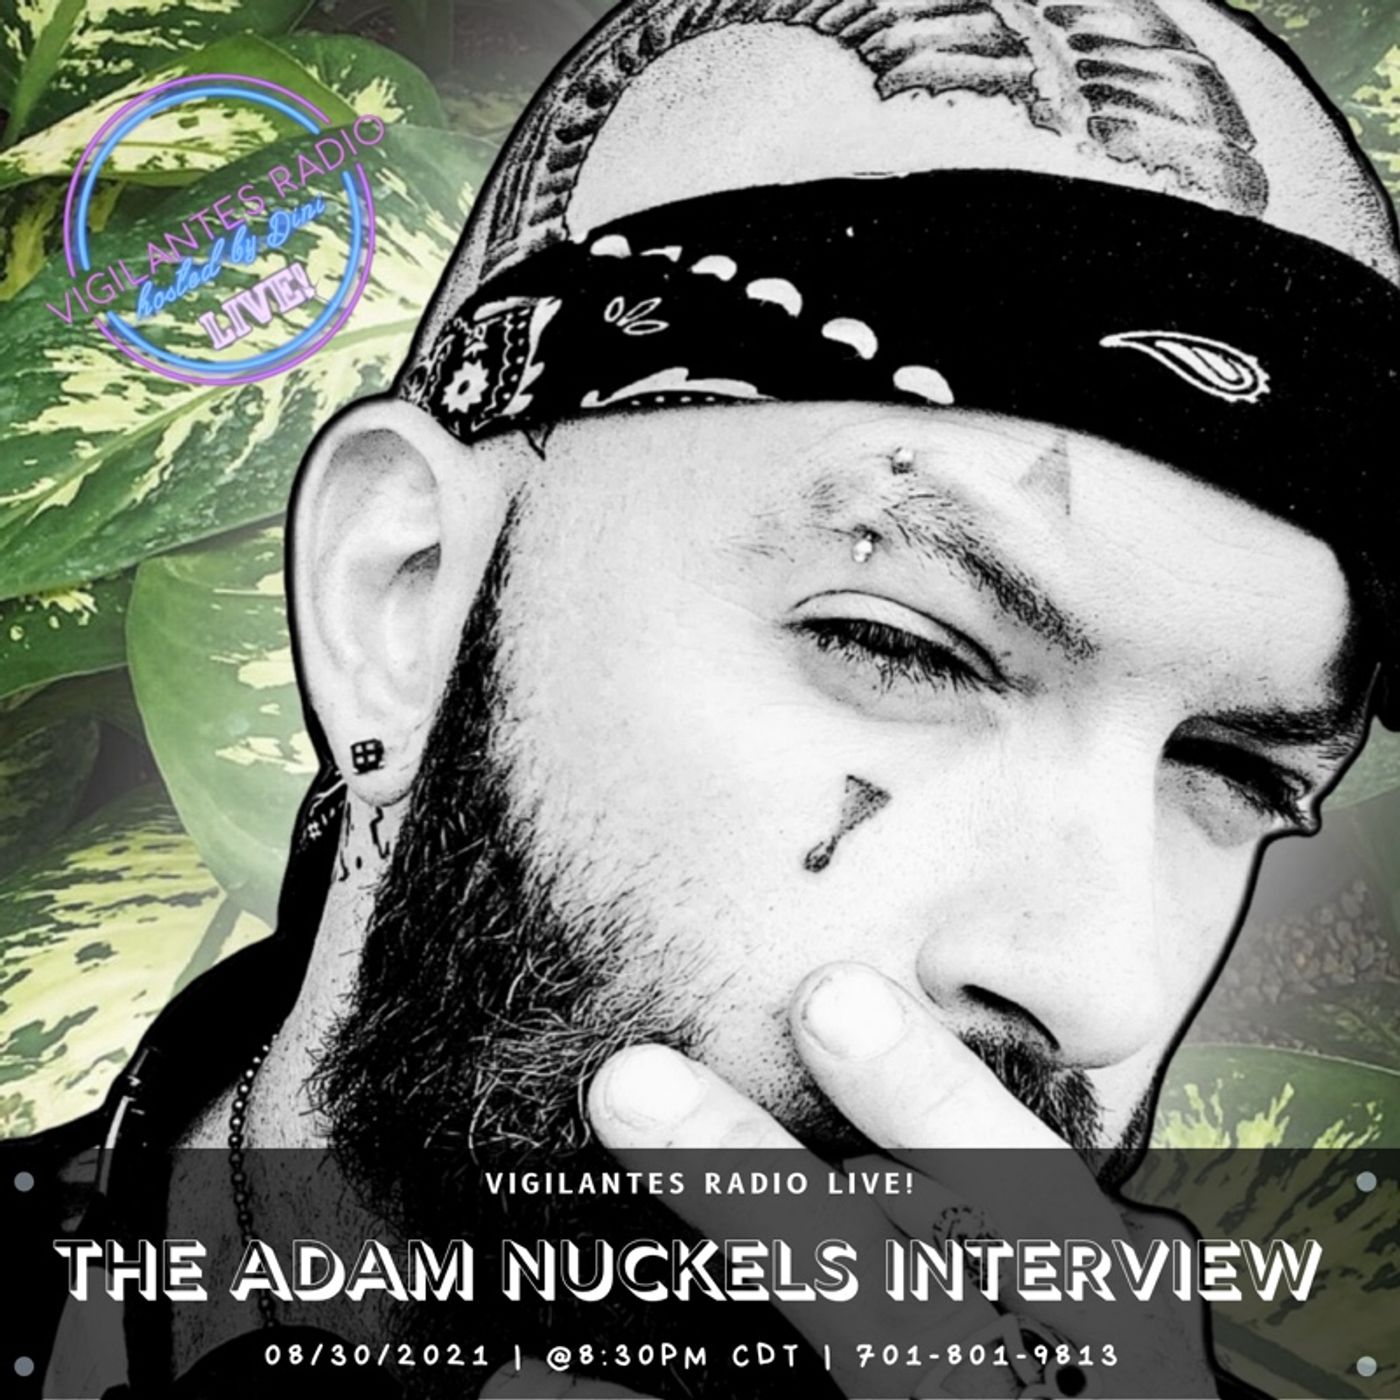 The Adam Nuckels Interview. Image